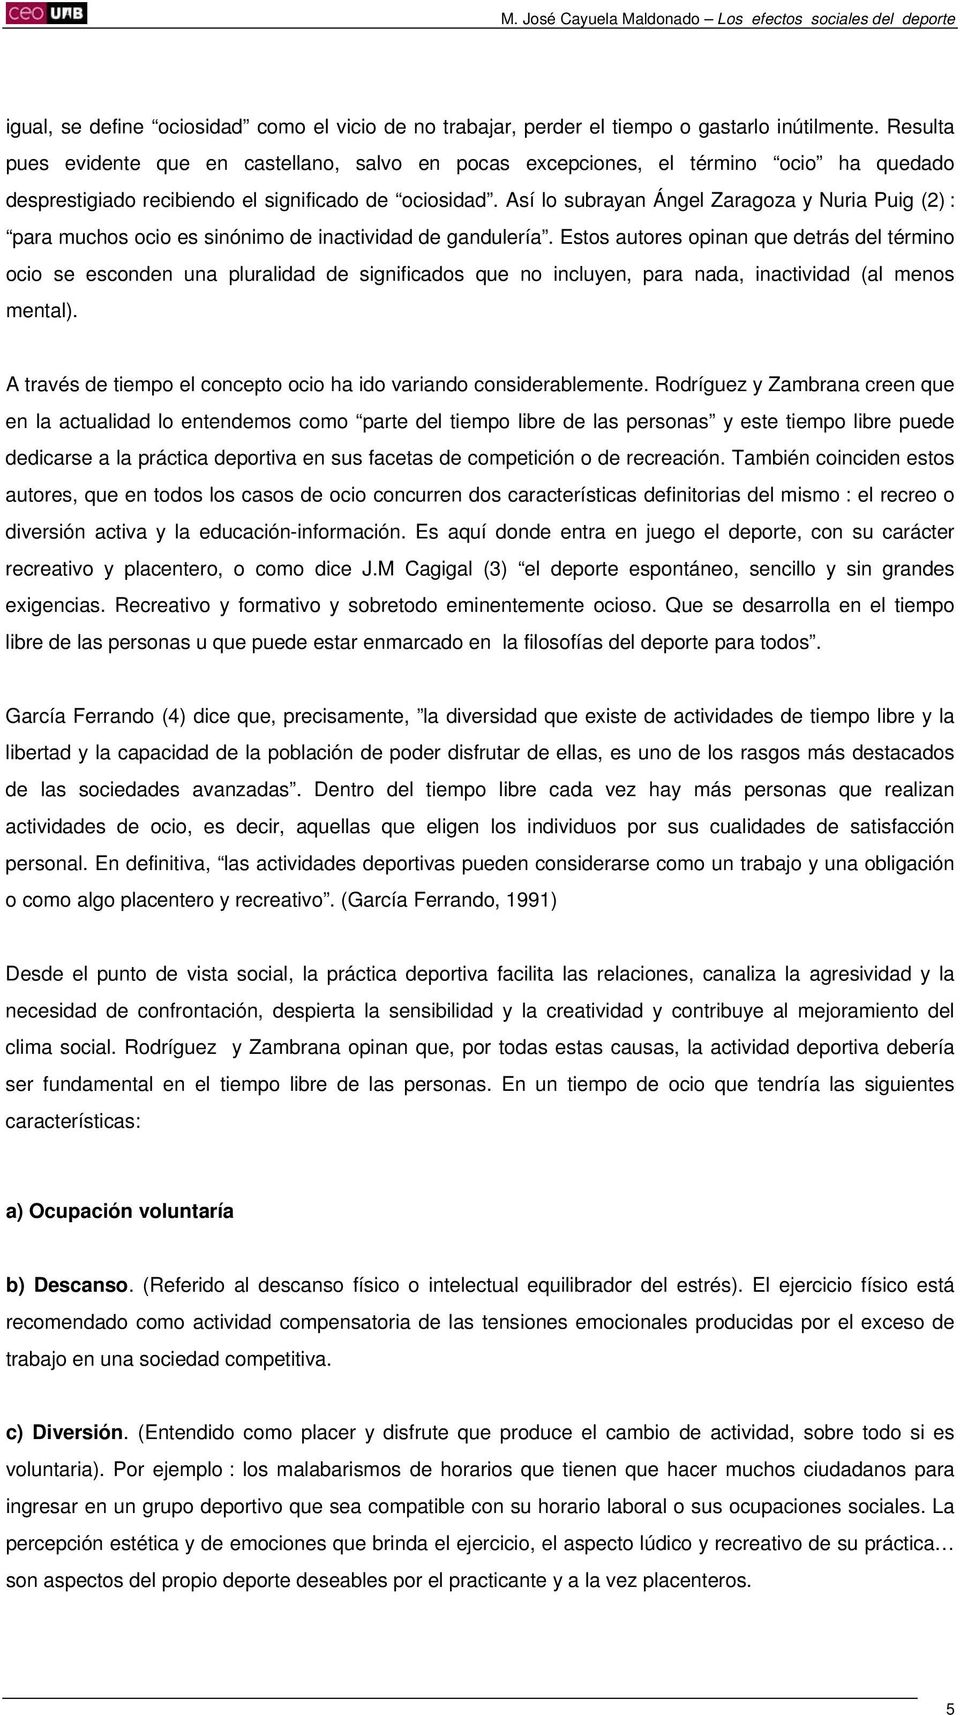 Así lo subrayan Ángel Zaragoza y Nuria Puig (2) : para muchos ocio es sinónimo de inactividad de gandulería.